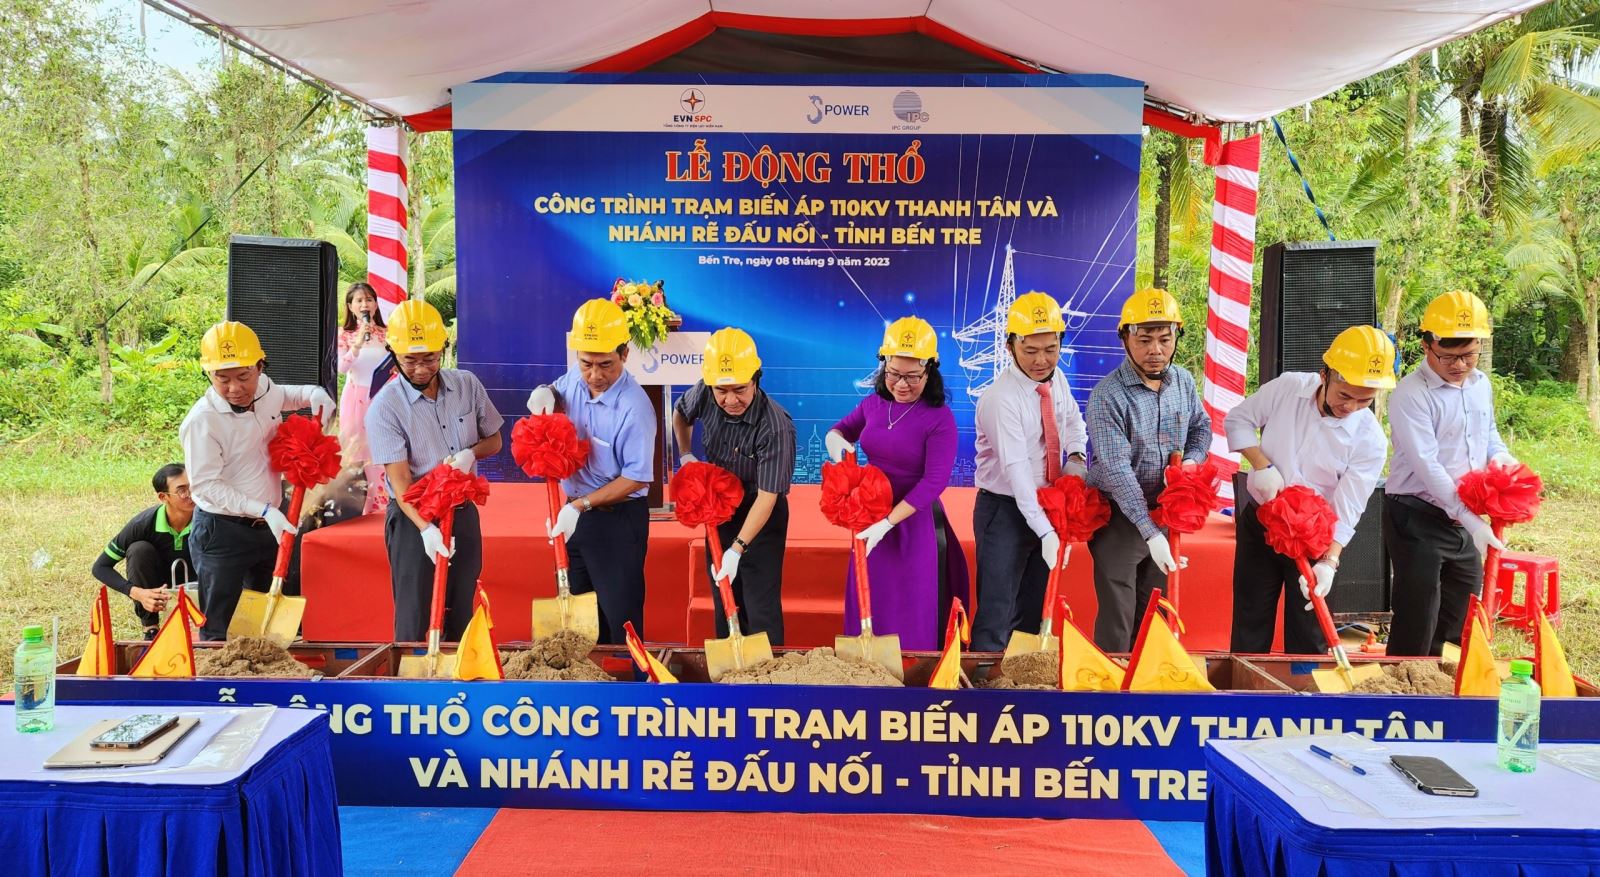 Đại diện đơn vị ngành Điện, chính quyền địa phương và đơn vị thi công thực hiện nghi thức động thổ công trình trạm biến áp 110kV Thanh Tân và nhánh rẽ đấu nối.